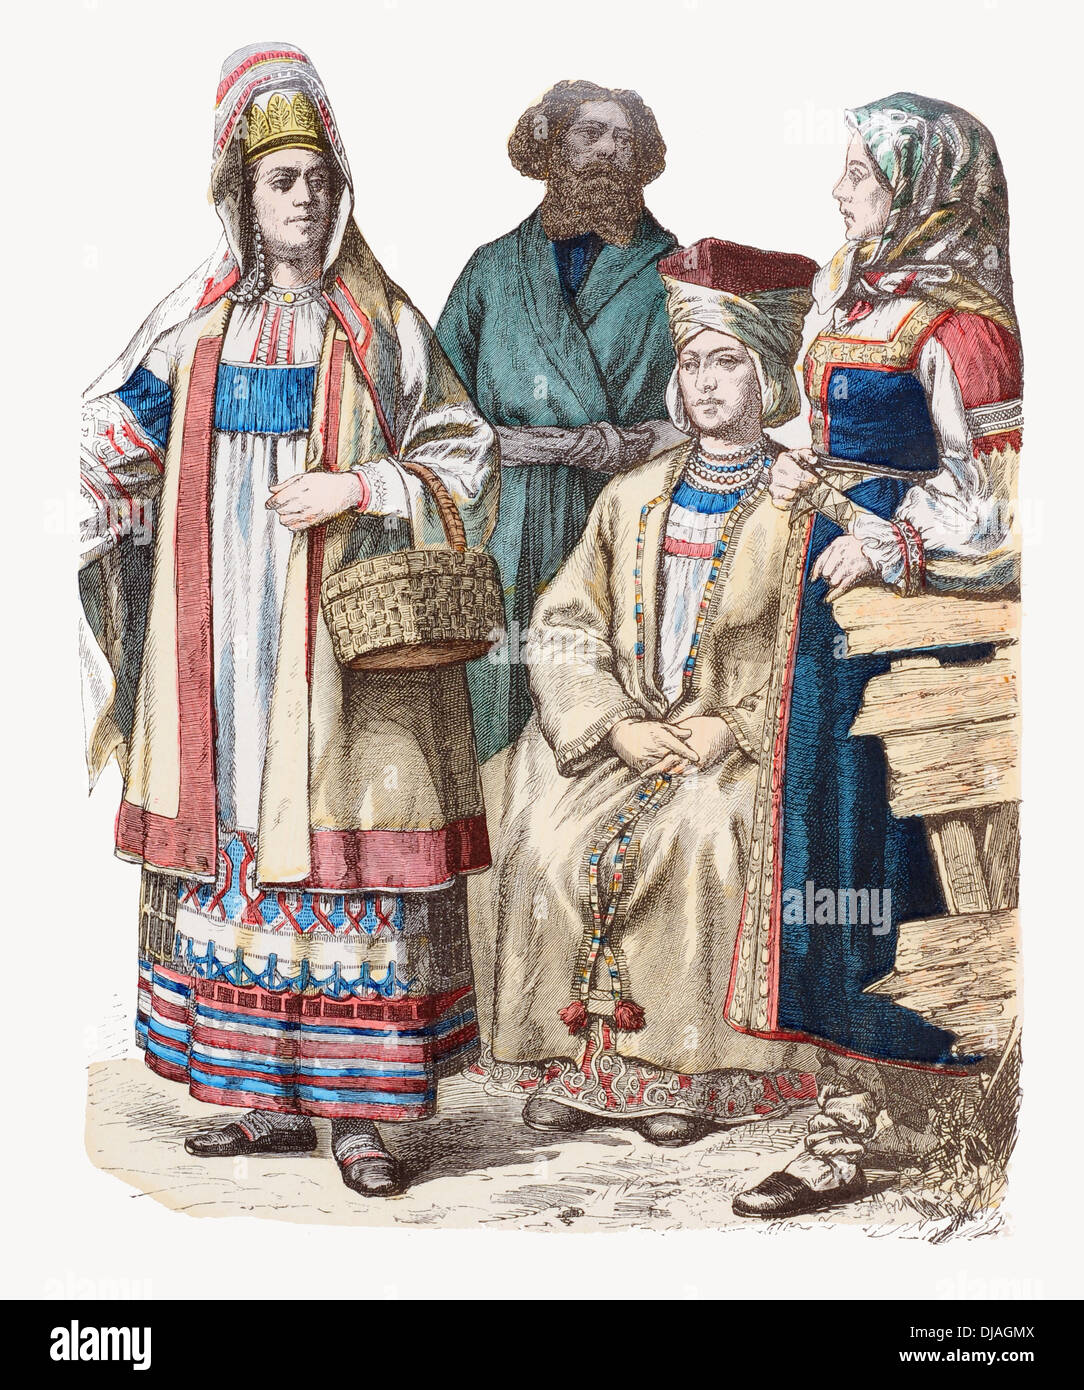 19e siècle XIX Russie gauche à droite Dame de Riazan, homme Woronesh, Dame de Finlande et la femme de Petersburg Banque D'Images